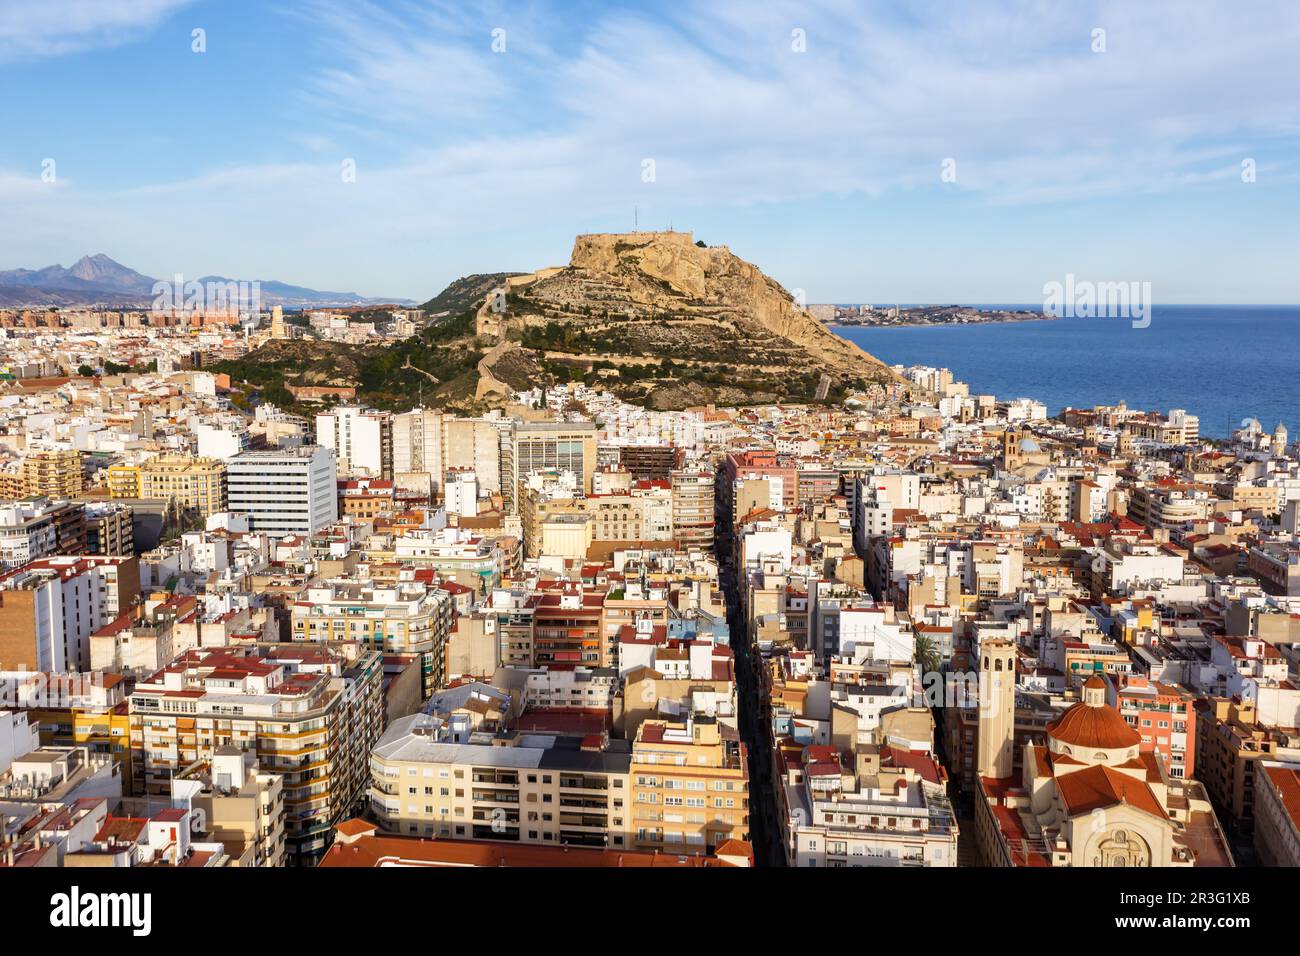 Alicante Alacant vue d'ensemble de la ville et du château Castillo Santa Barbara voyage vacances en Espagne Banque D'Images